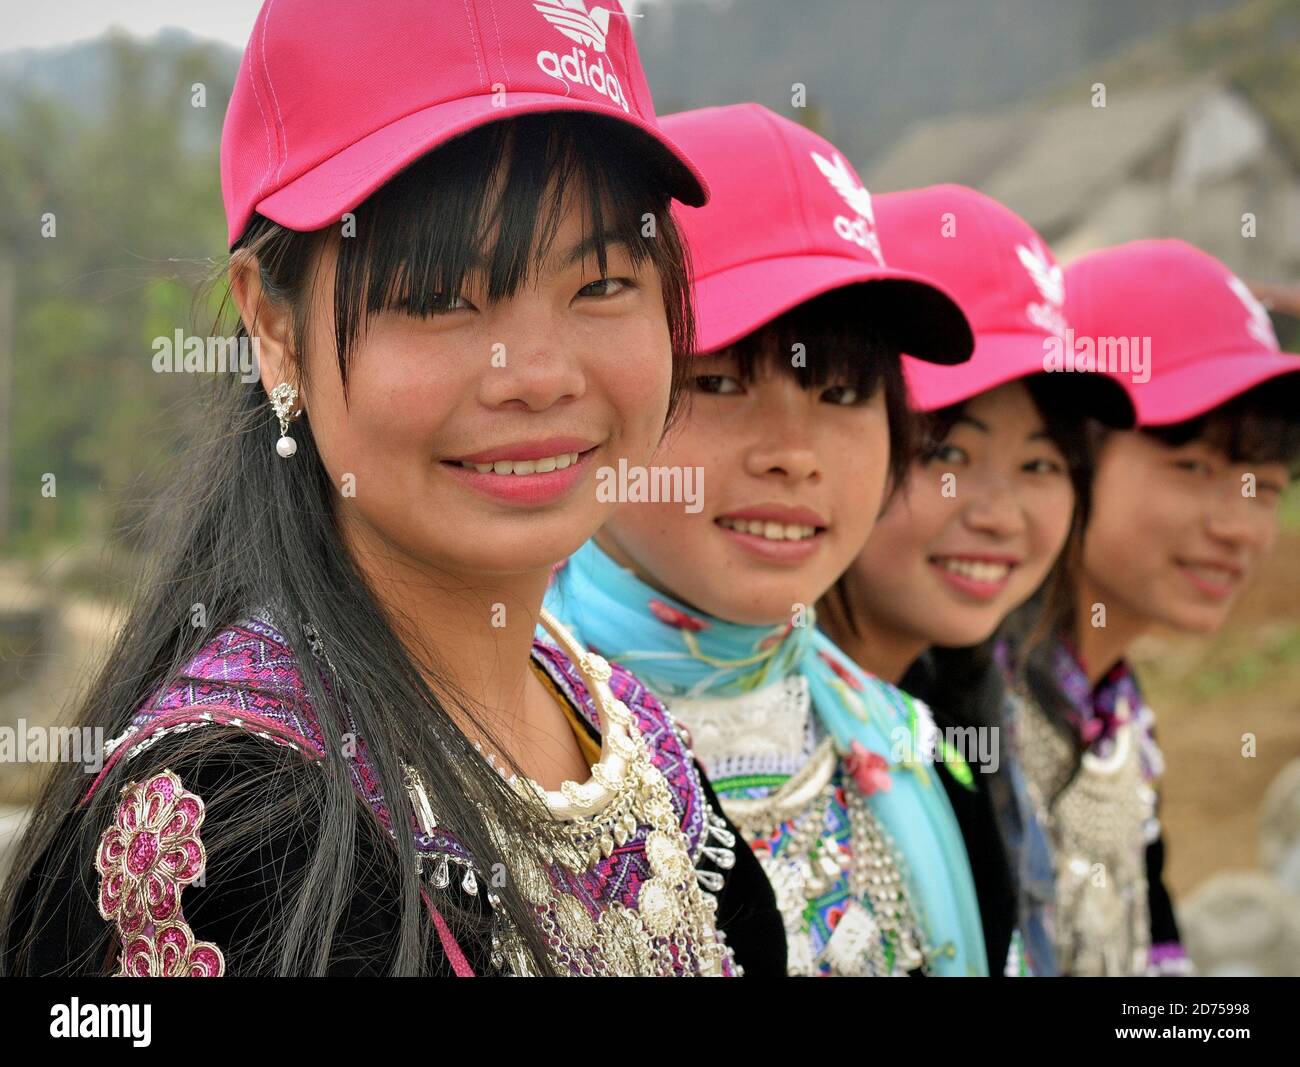 Vier vietnamesische Hmong Hill-Tribe Teenager-Mädchen sitzen in einer Reihe, tragen moderne rosa Baseballmützen und traditionelle Tribal-Kleidung, posieren zusammen für die Kamera. Stockfoto